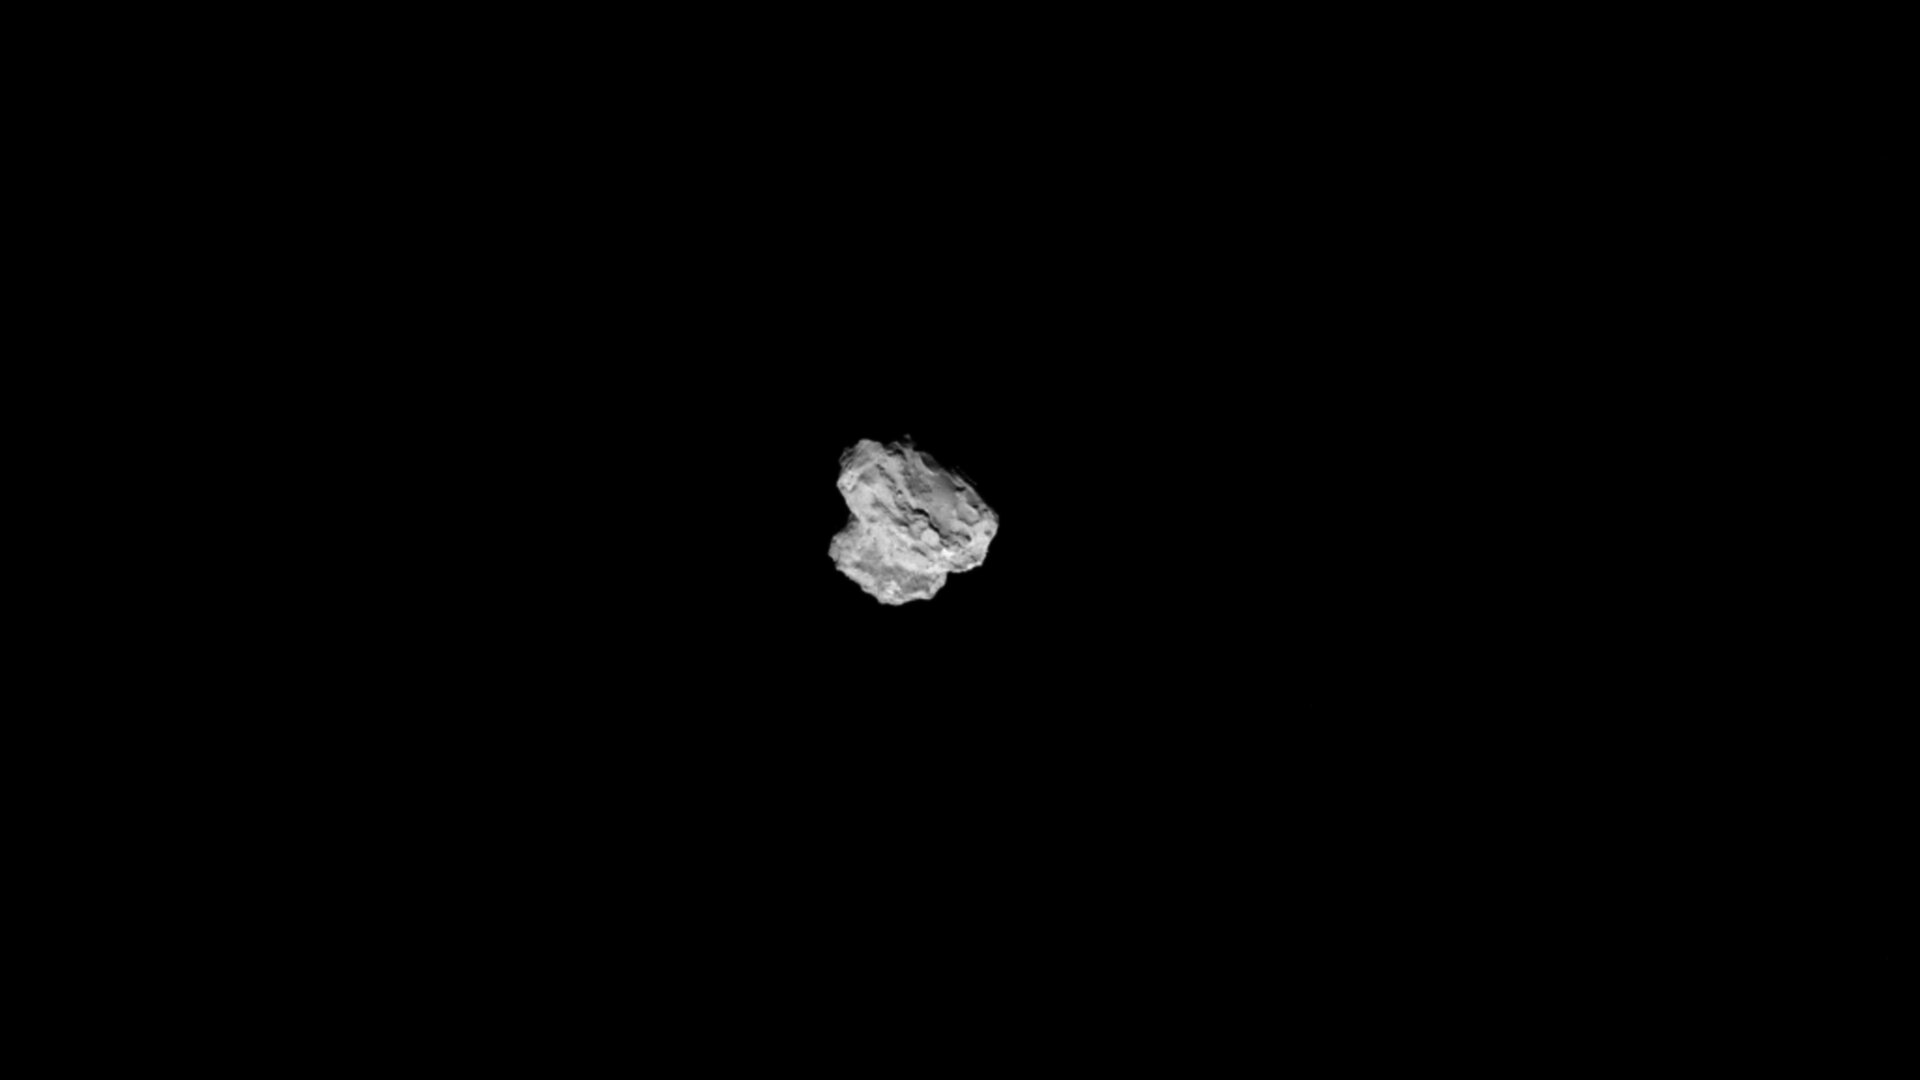 Eine Nahaufnahme von dem Kometen 67P/Tschurjumow-Gerasimenko, aufgenommen von der NAVCAM am 2. August 2014 aus einer Entfernung von etwa 500km. Das Bild ist mit der Interpolationstechnik bearbeitet worden und die Auflösung wurde von 1024 x 1024 Pixel auf 5120 x 5120 Pixel erhöht.